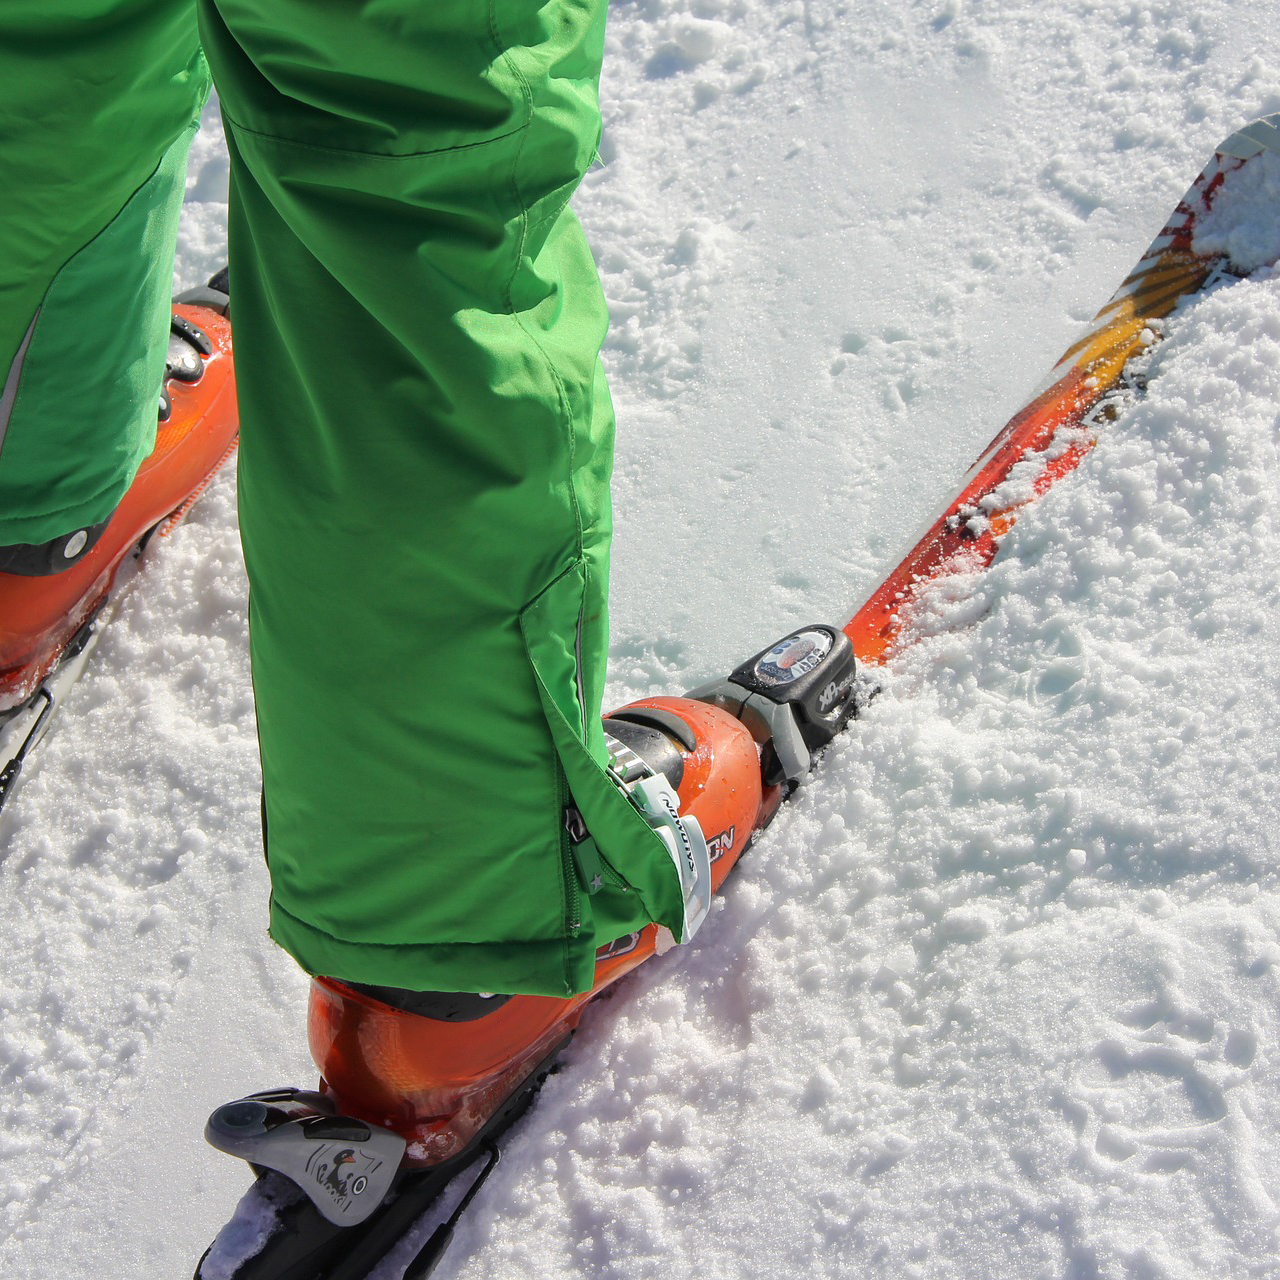 Nederdelen på person med pjäxor och skidor i snö